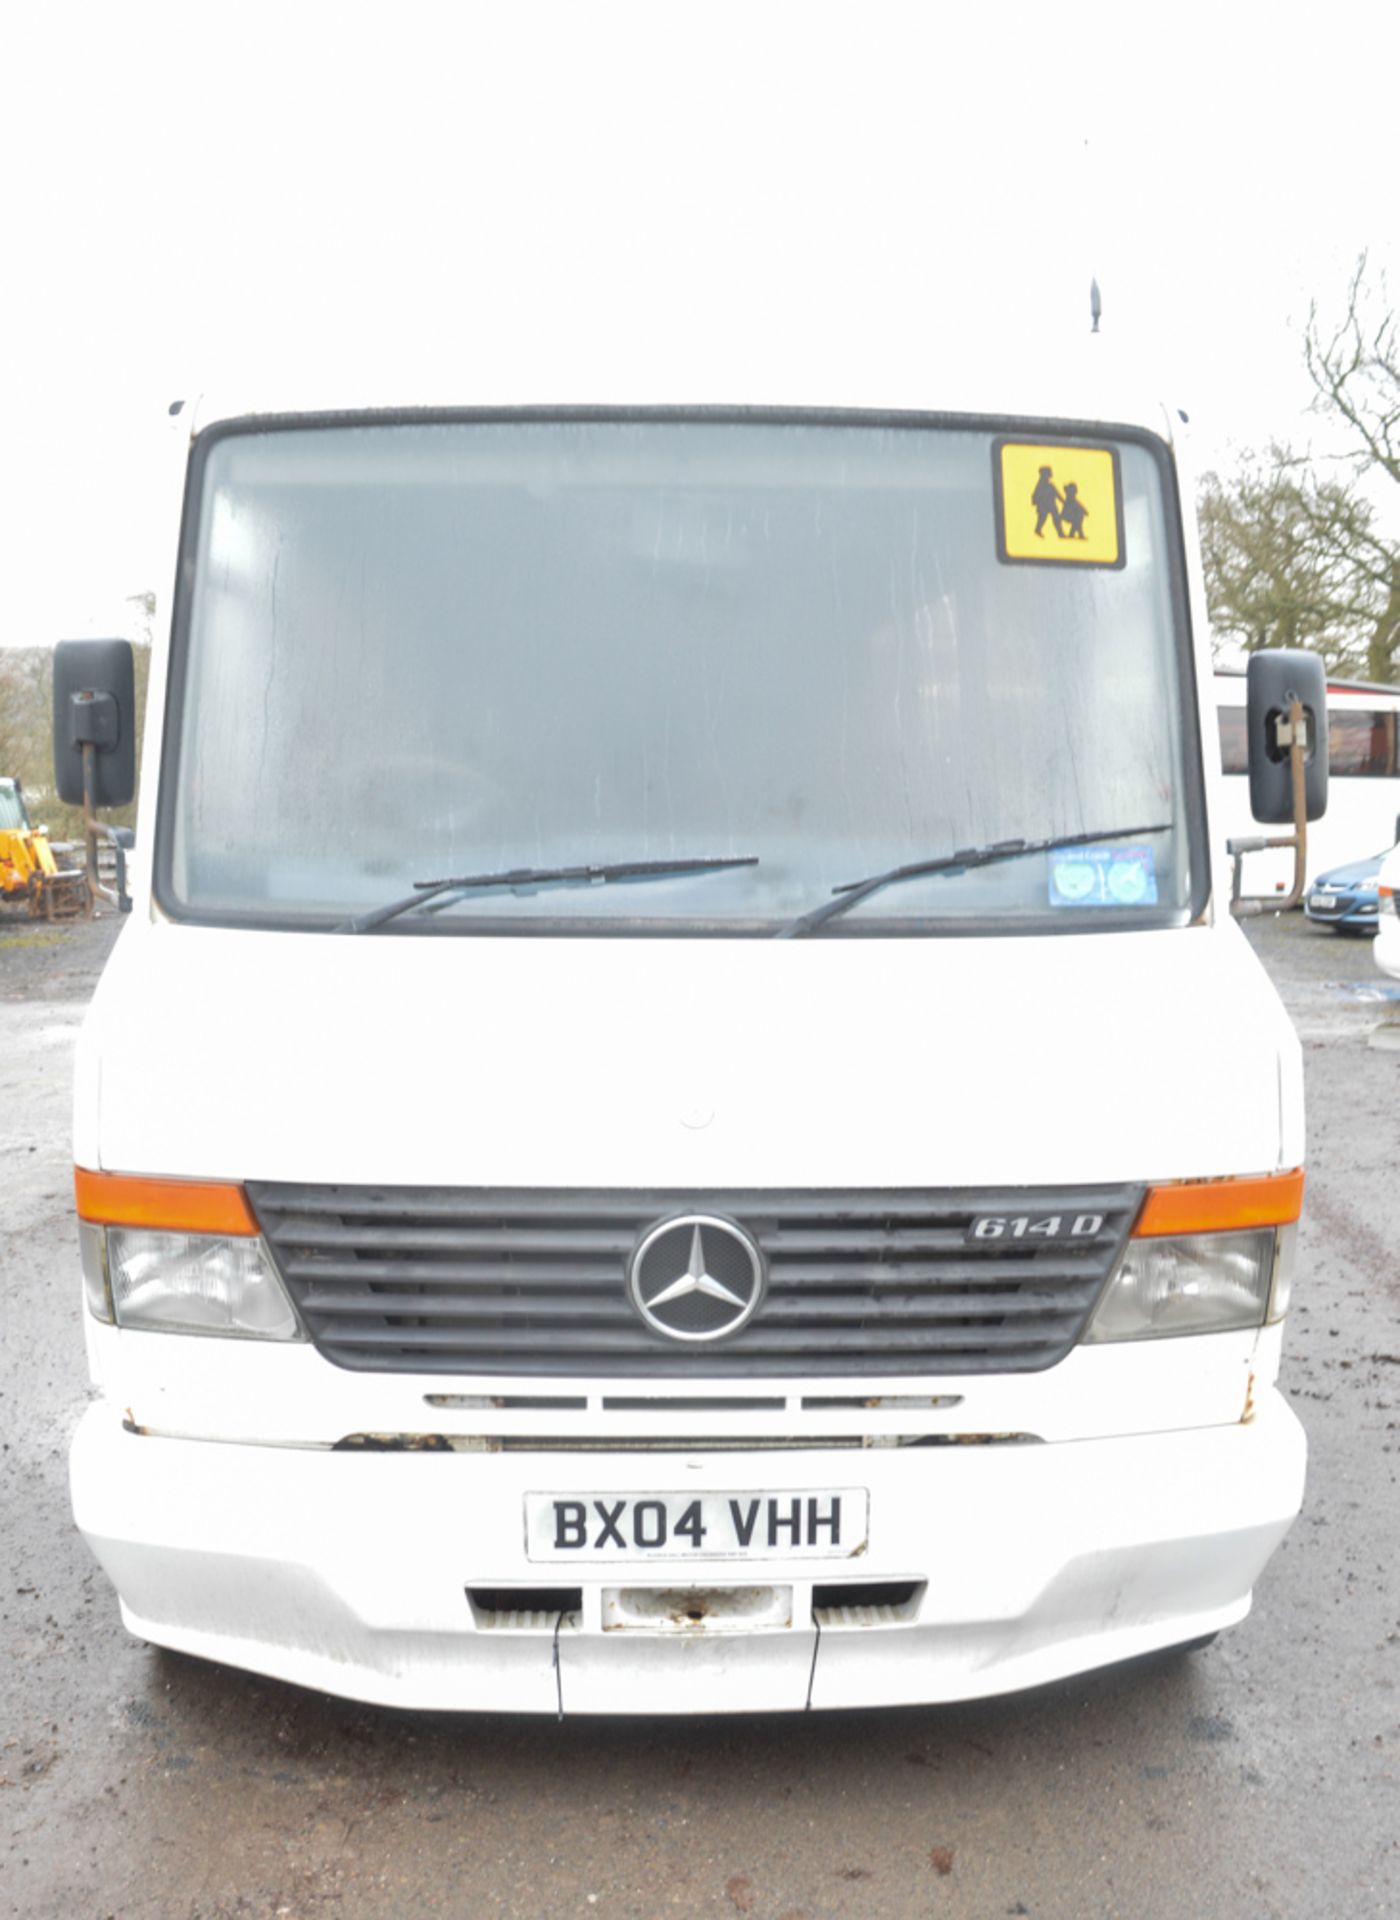 Mercedes Benz Vario 614 D 23 seat minibus  Registration Number: BX04 VHH Date of Registration: 09/0 - Image 5 of 9